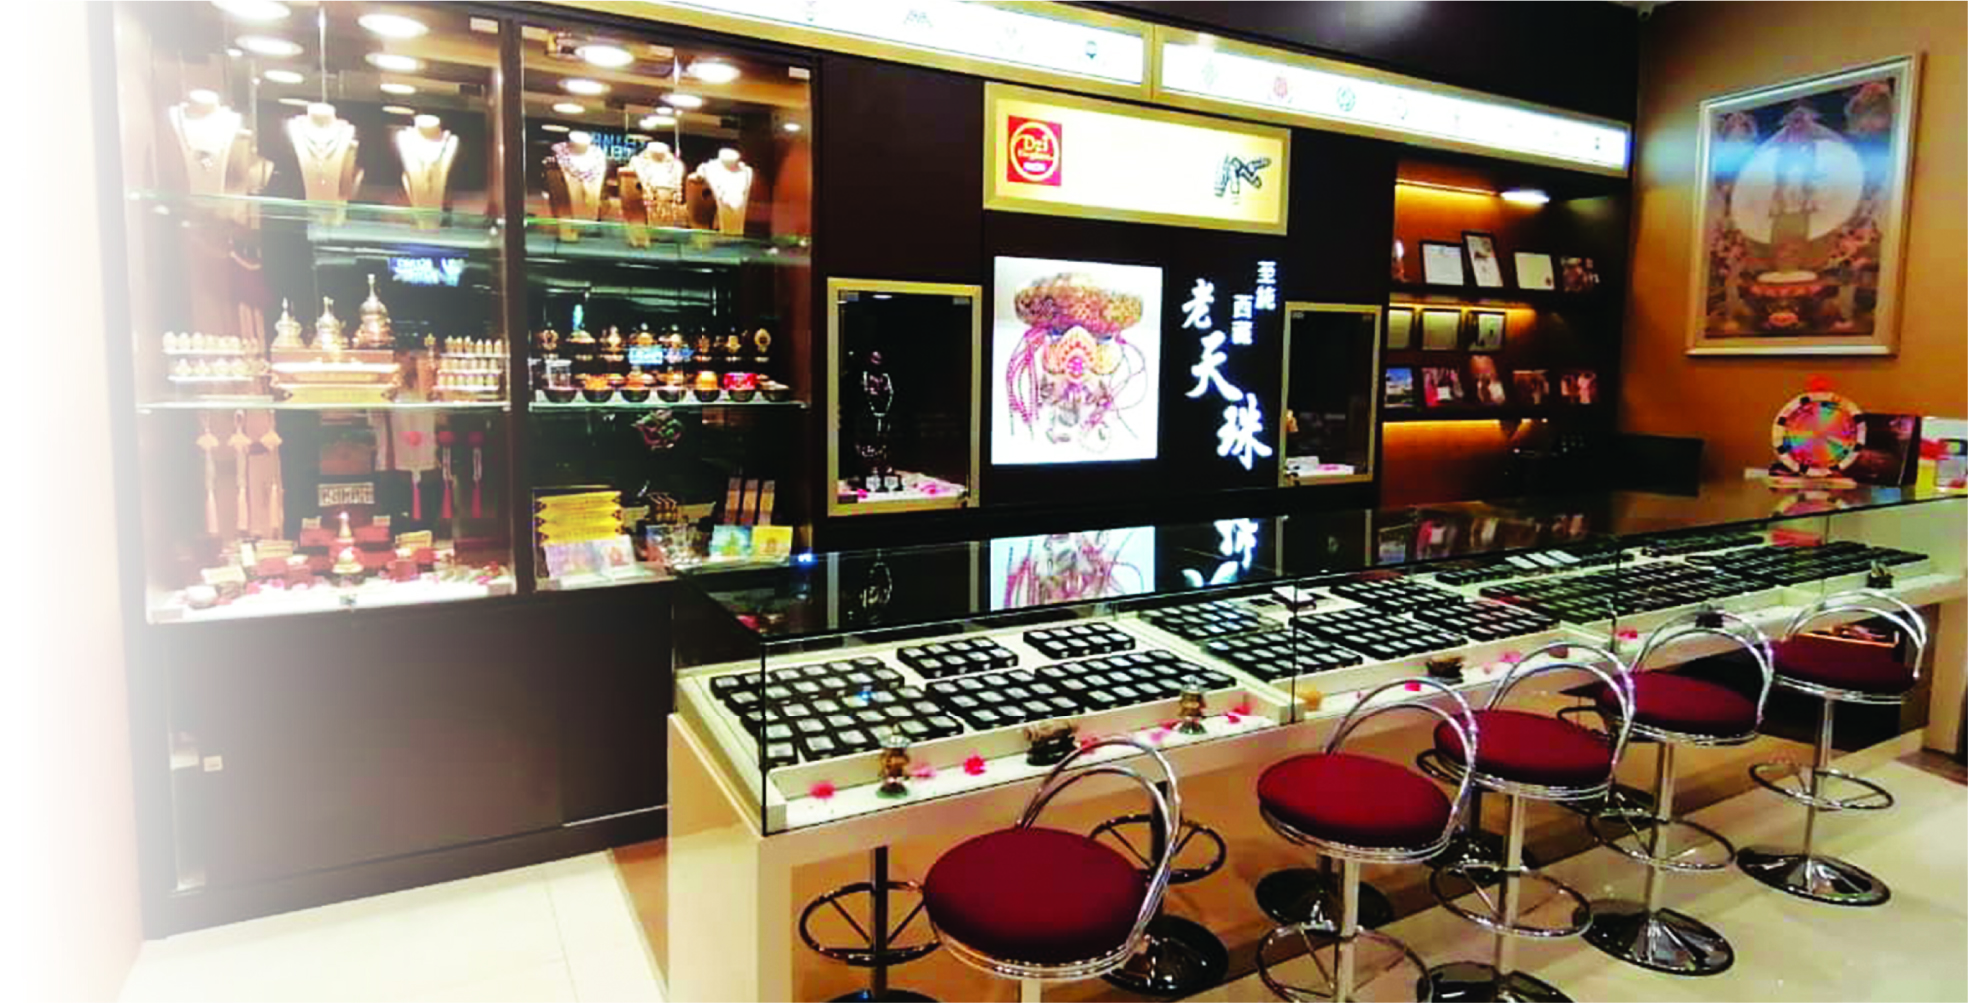 天珠王国目前在全马拥有16家连锁店，绝对是天珠至尊。